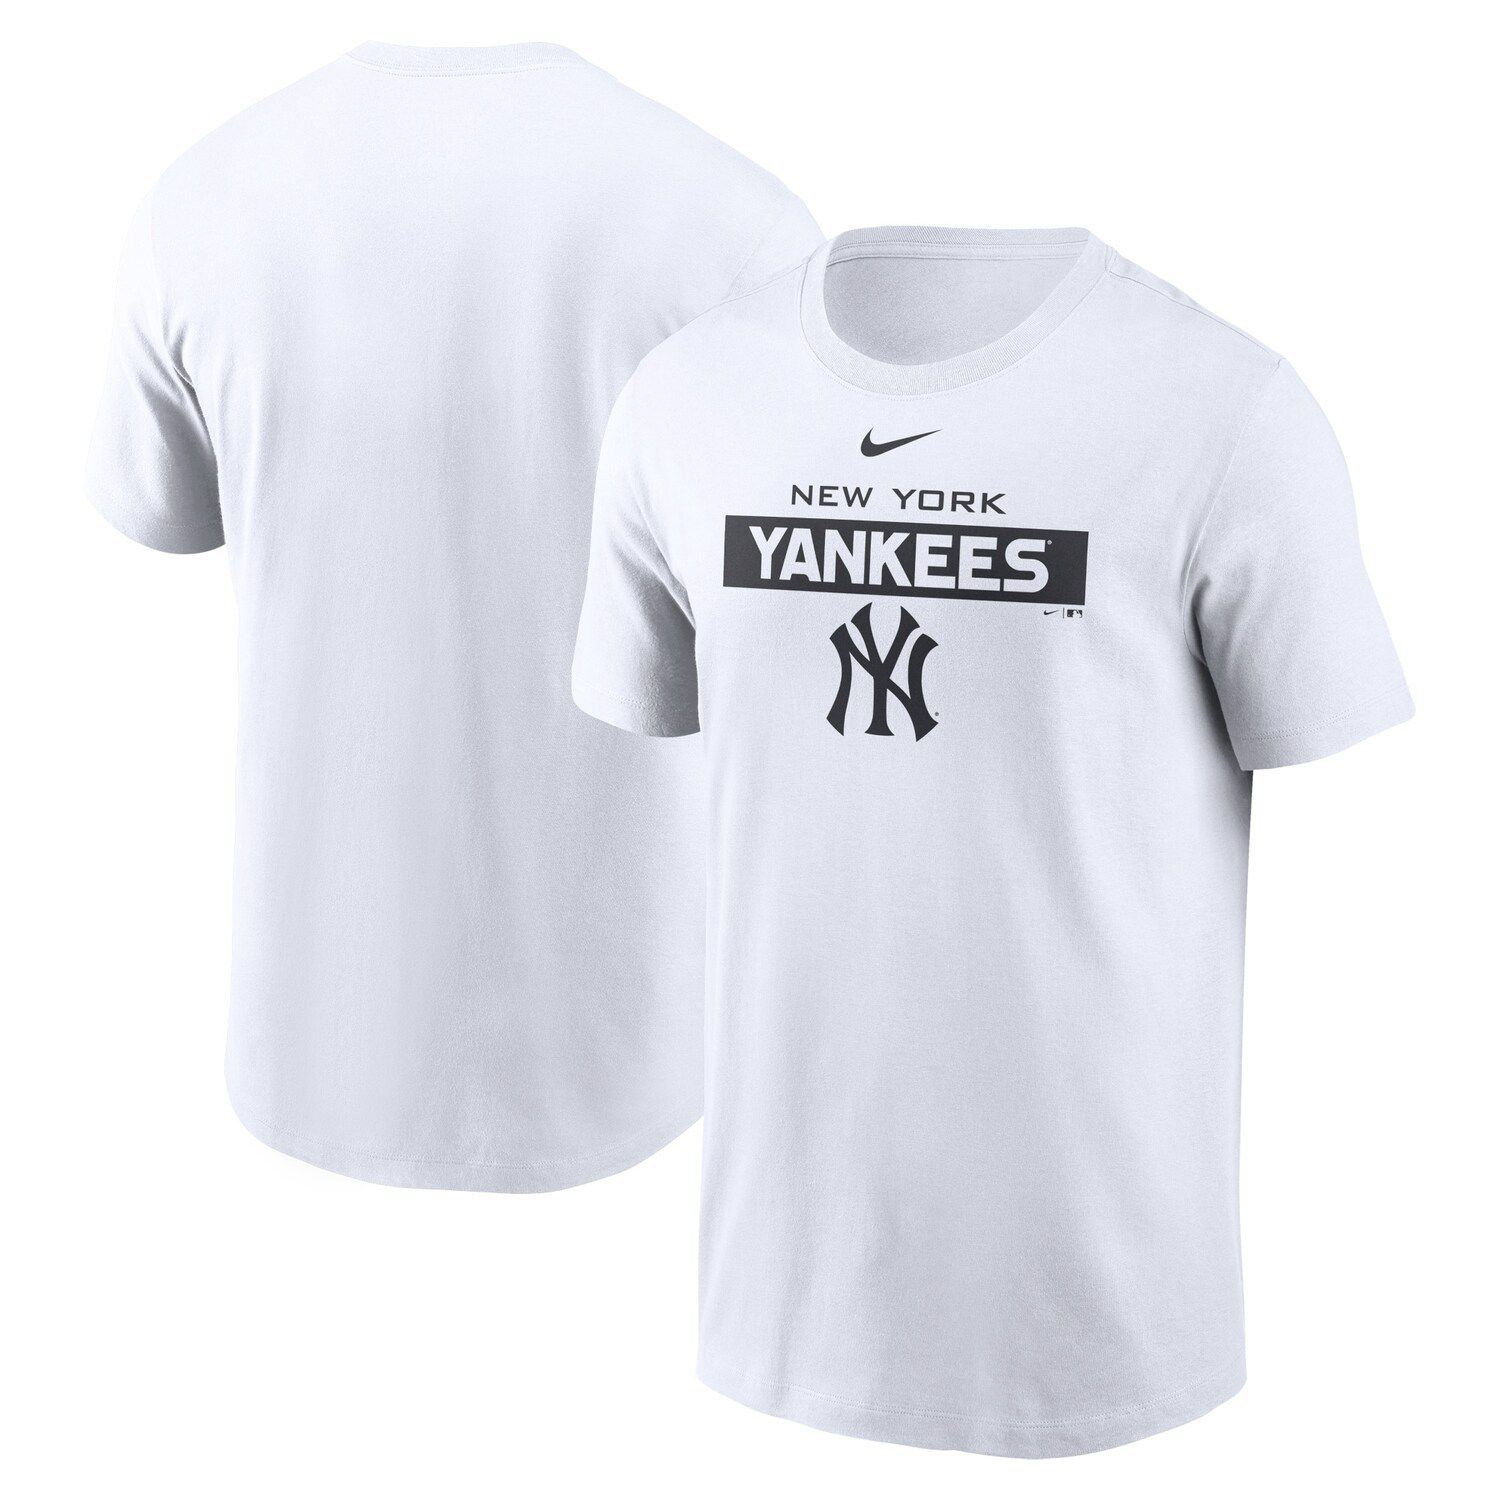 Men's Fanatics Branded White/Navy New York Yankees Backdoor Slider Raglan 3/4-Sleeve T-Shirt